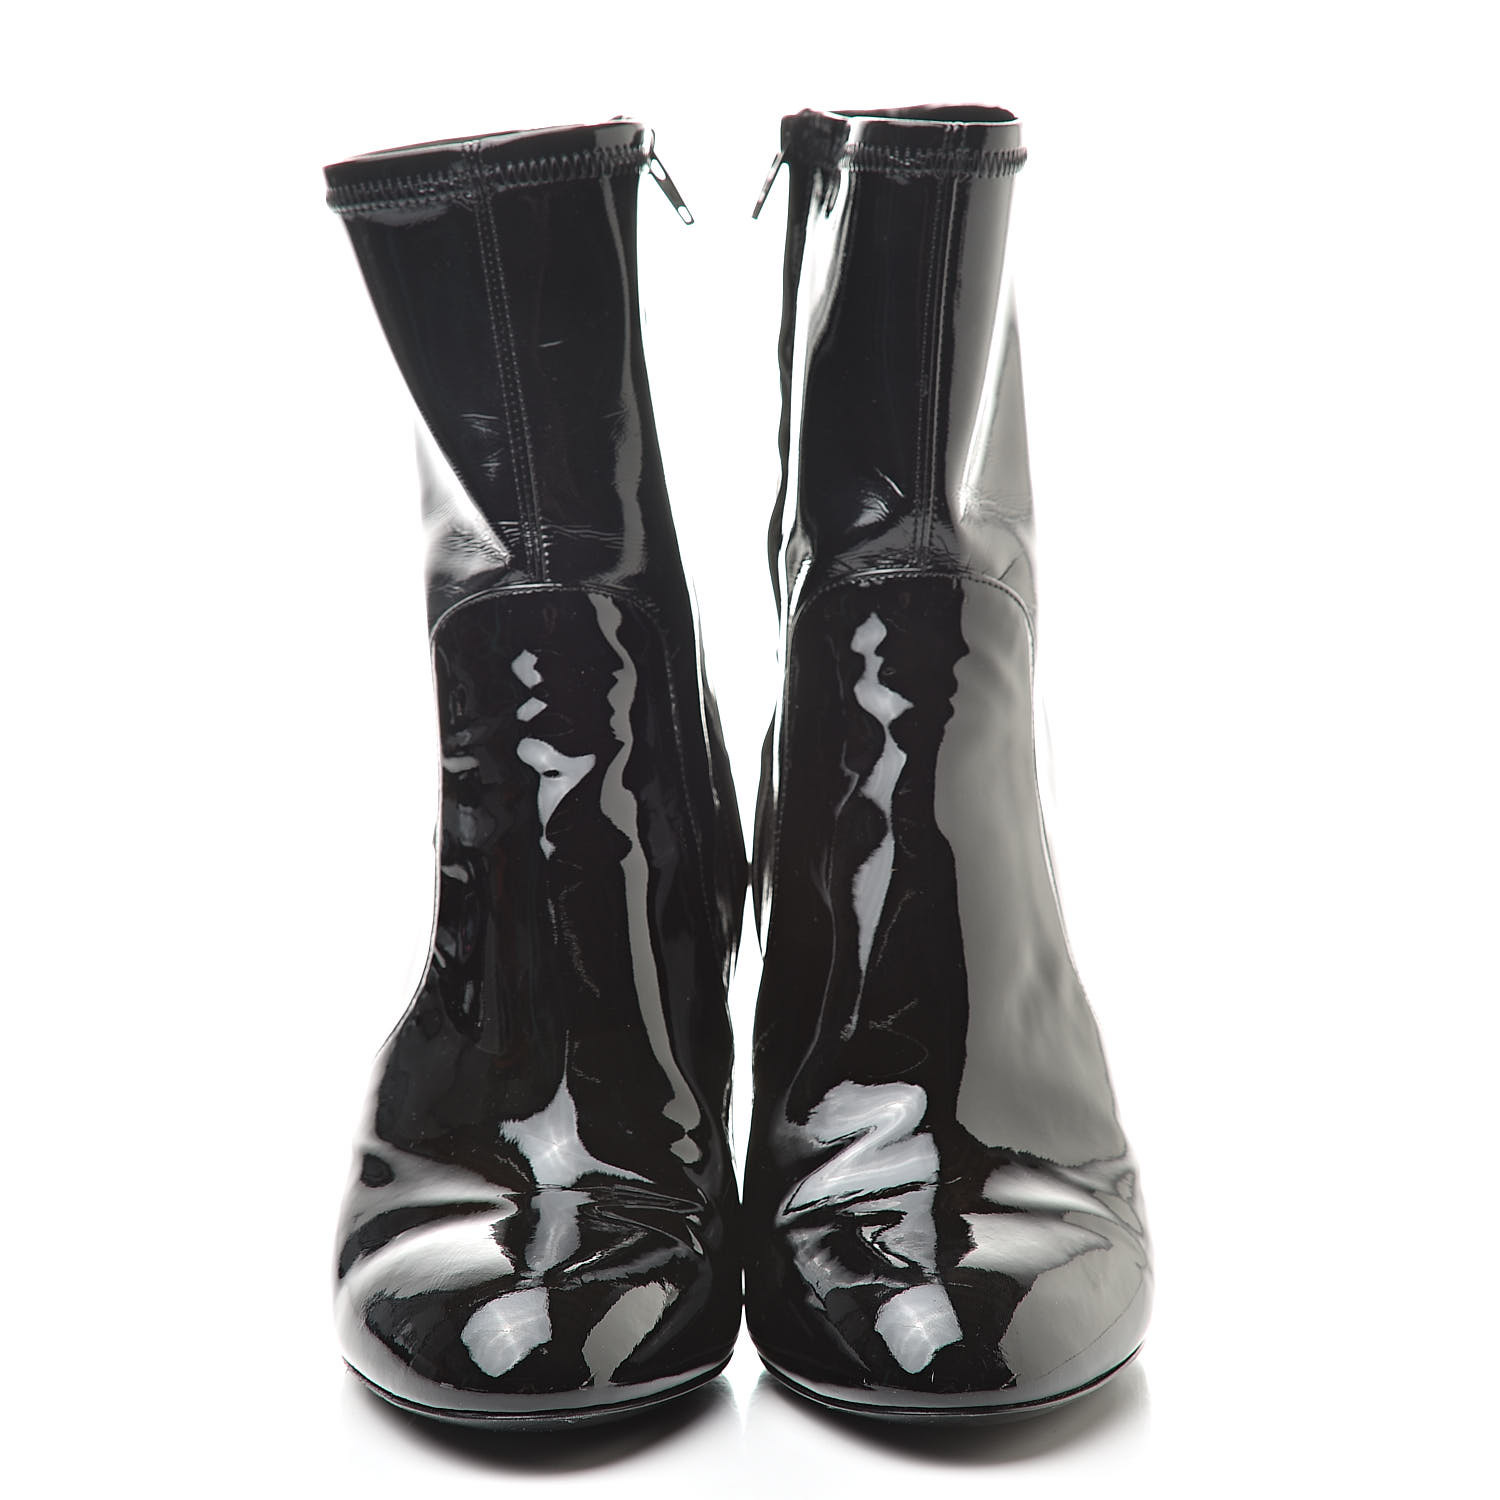 LOUIS VUITTON Patent Uniformes Silhouette Ankle Boots 38.5 Black 522734